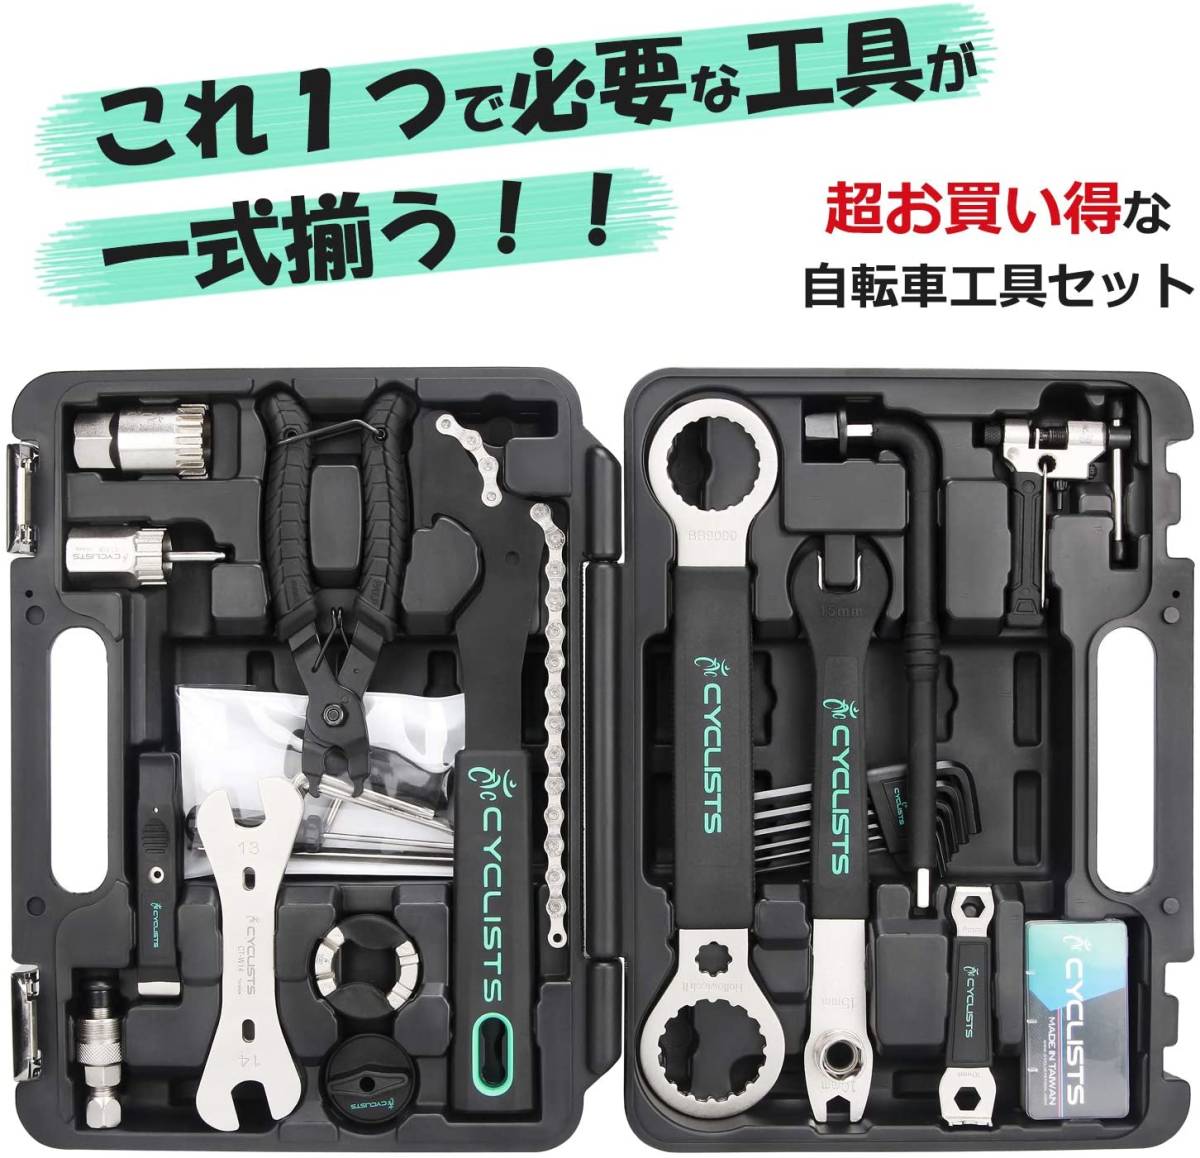 【日本未発売】 自転車専用工具セット 23点セット プロ向き 修理